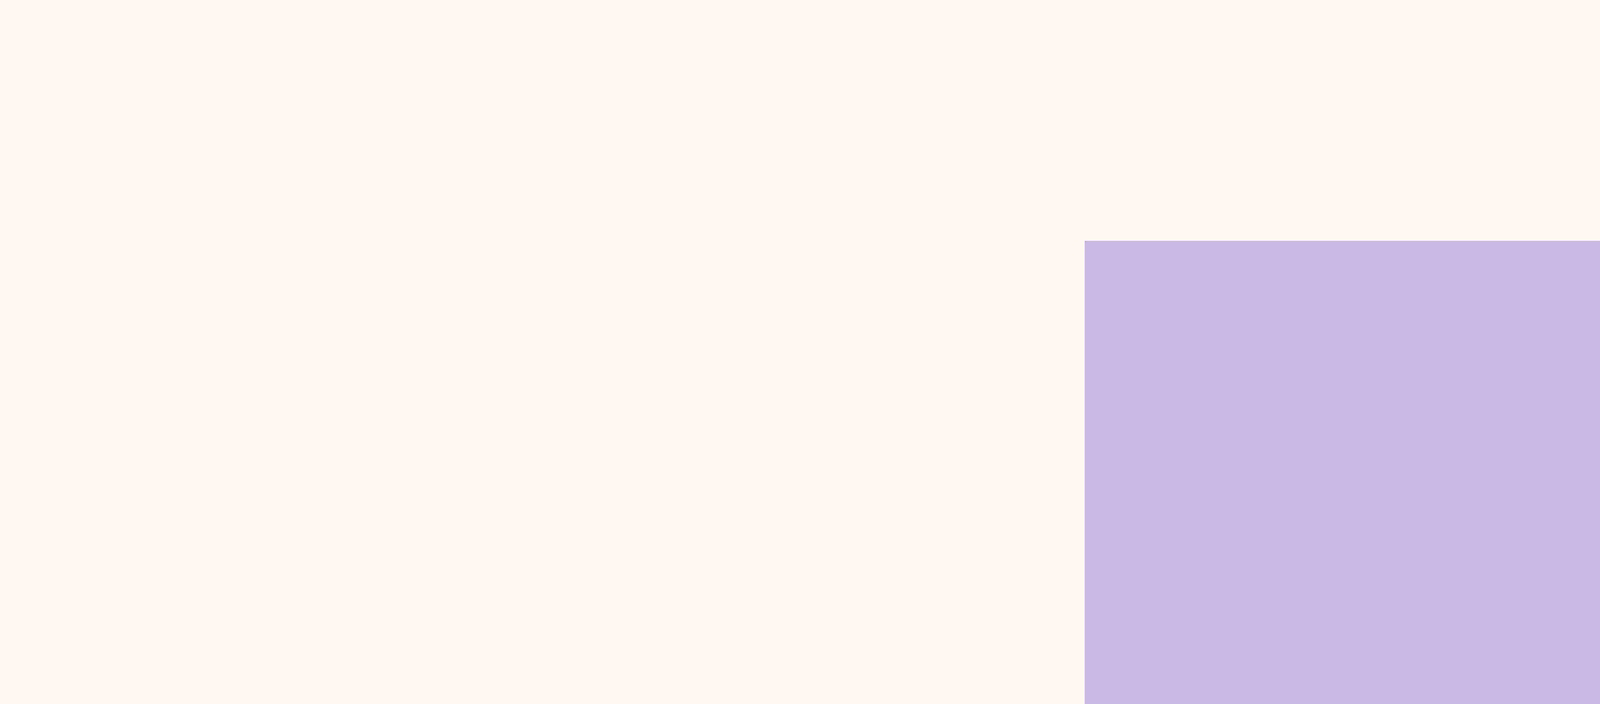 Obrázok s fialovým a bielym štvorcom.